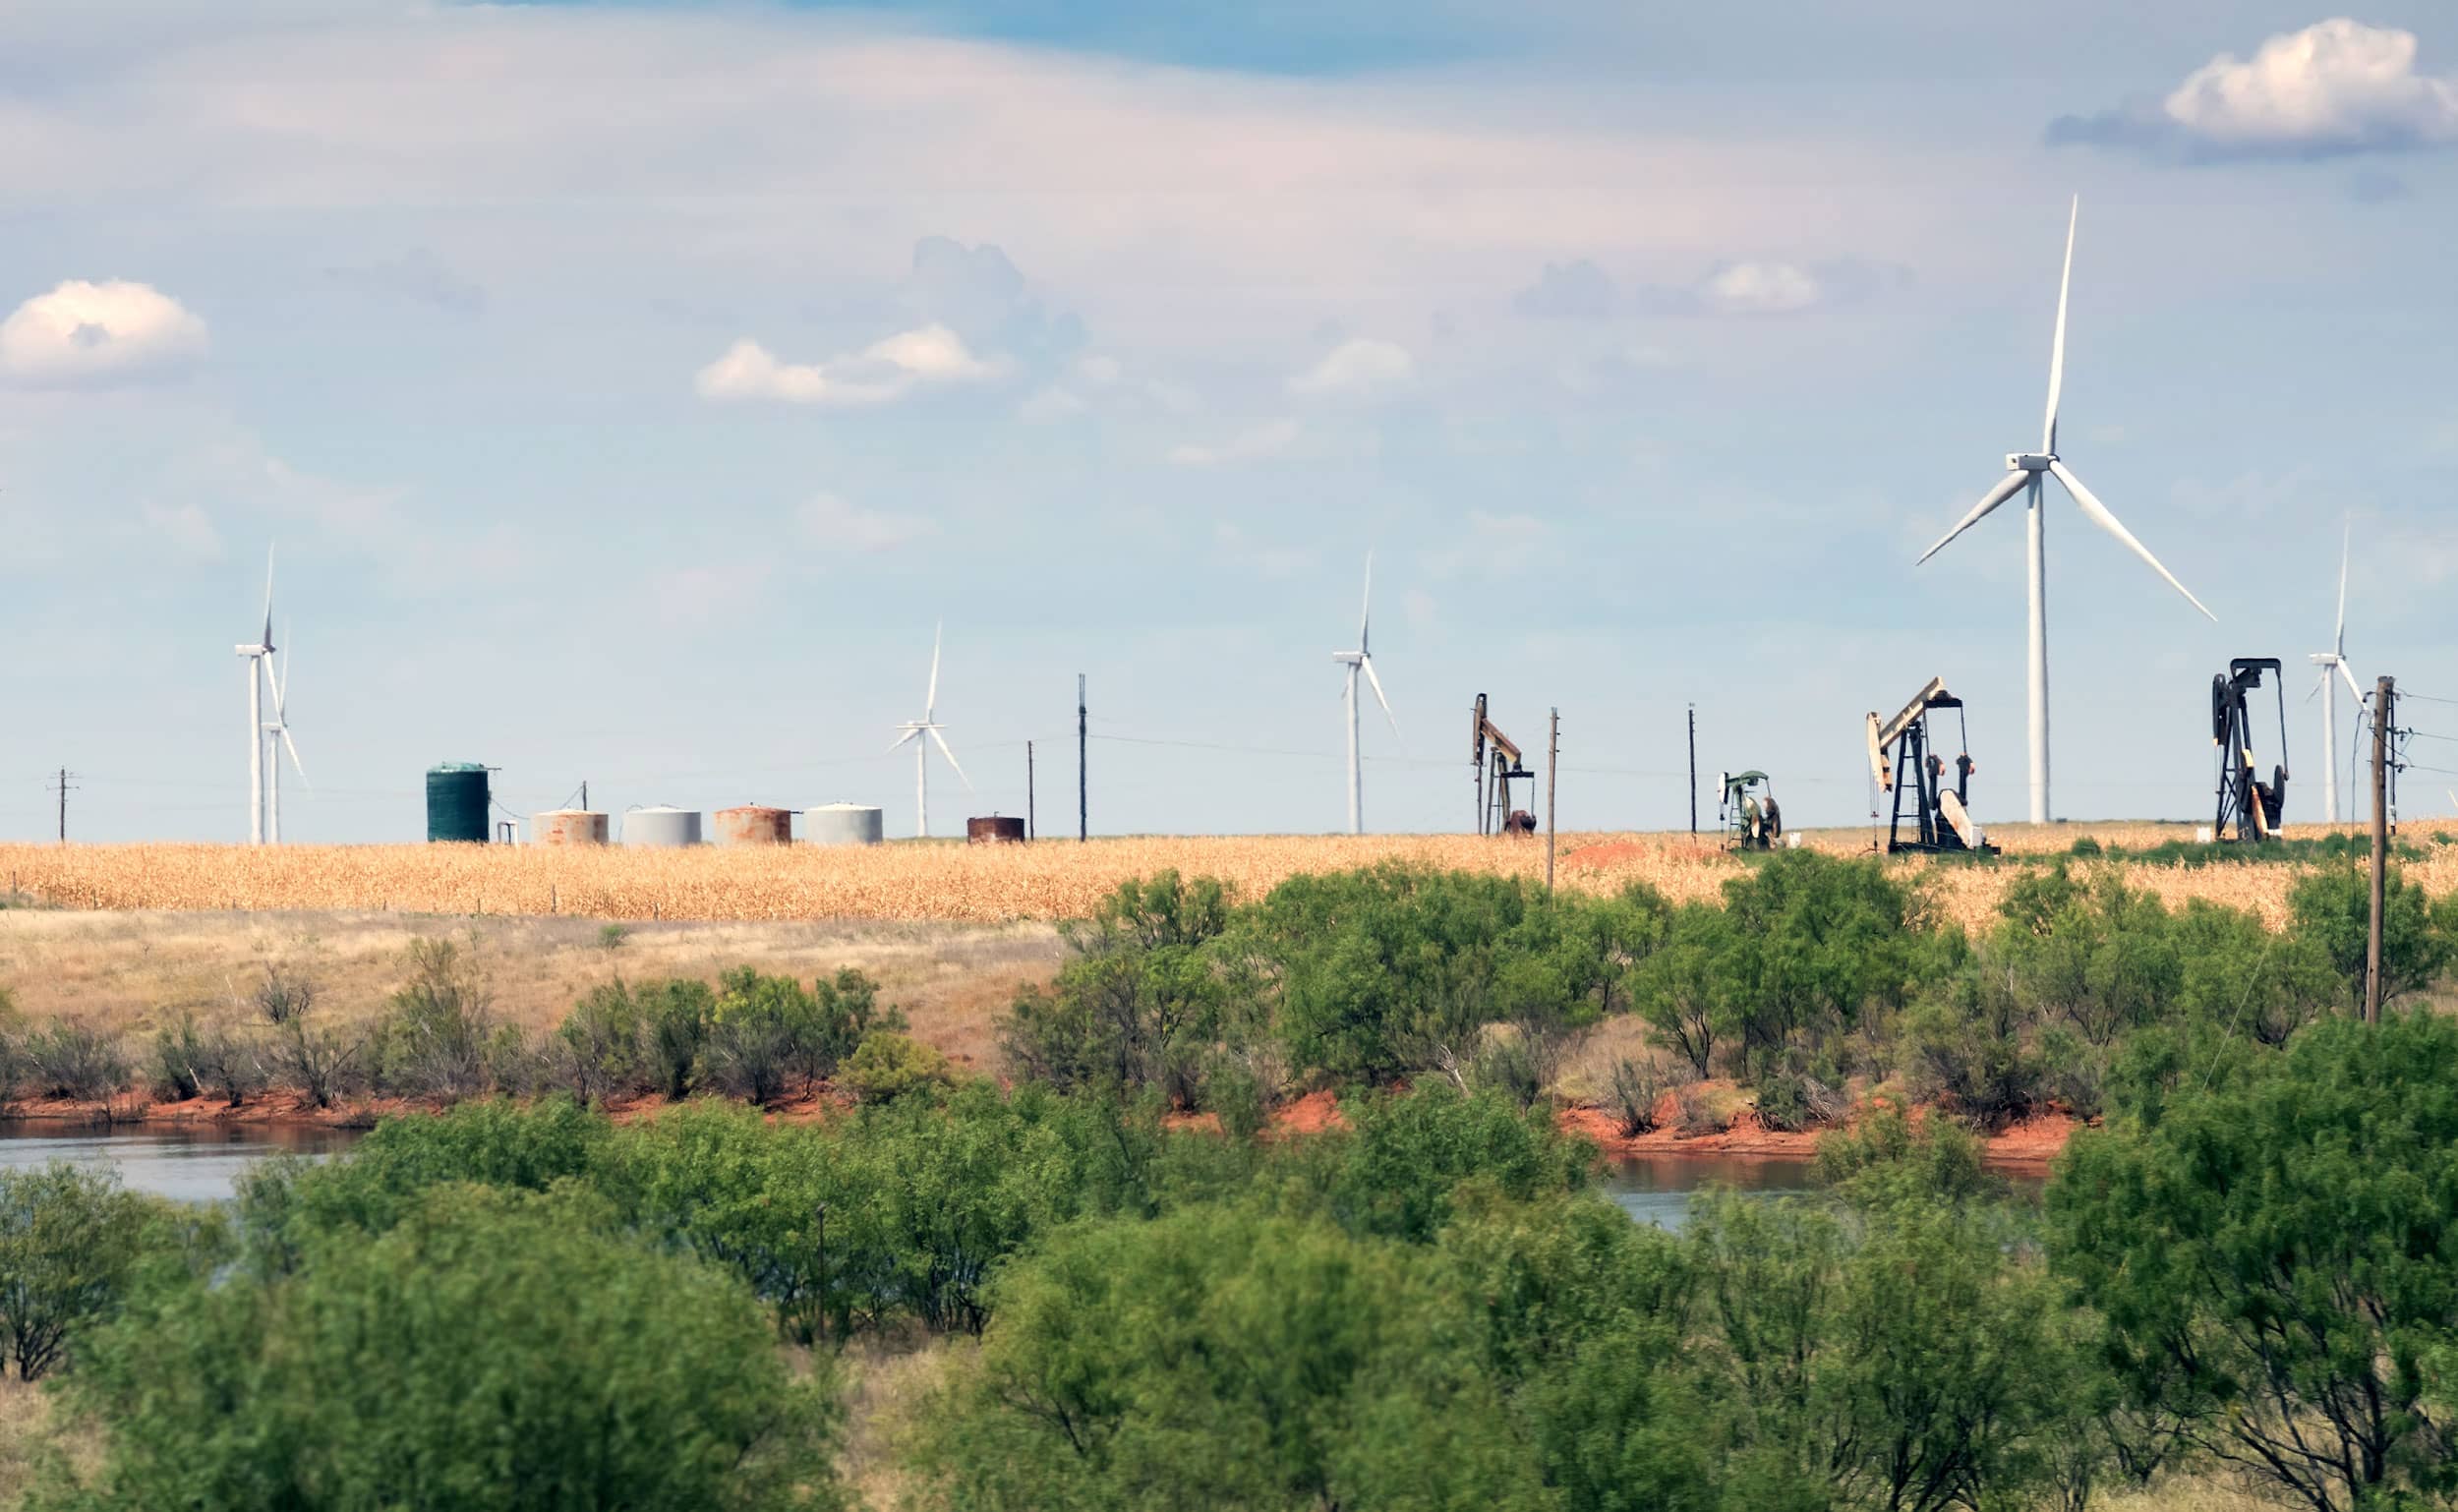 Oil fields of Midland, Texas